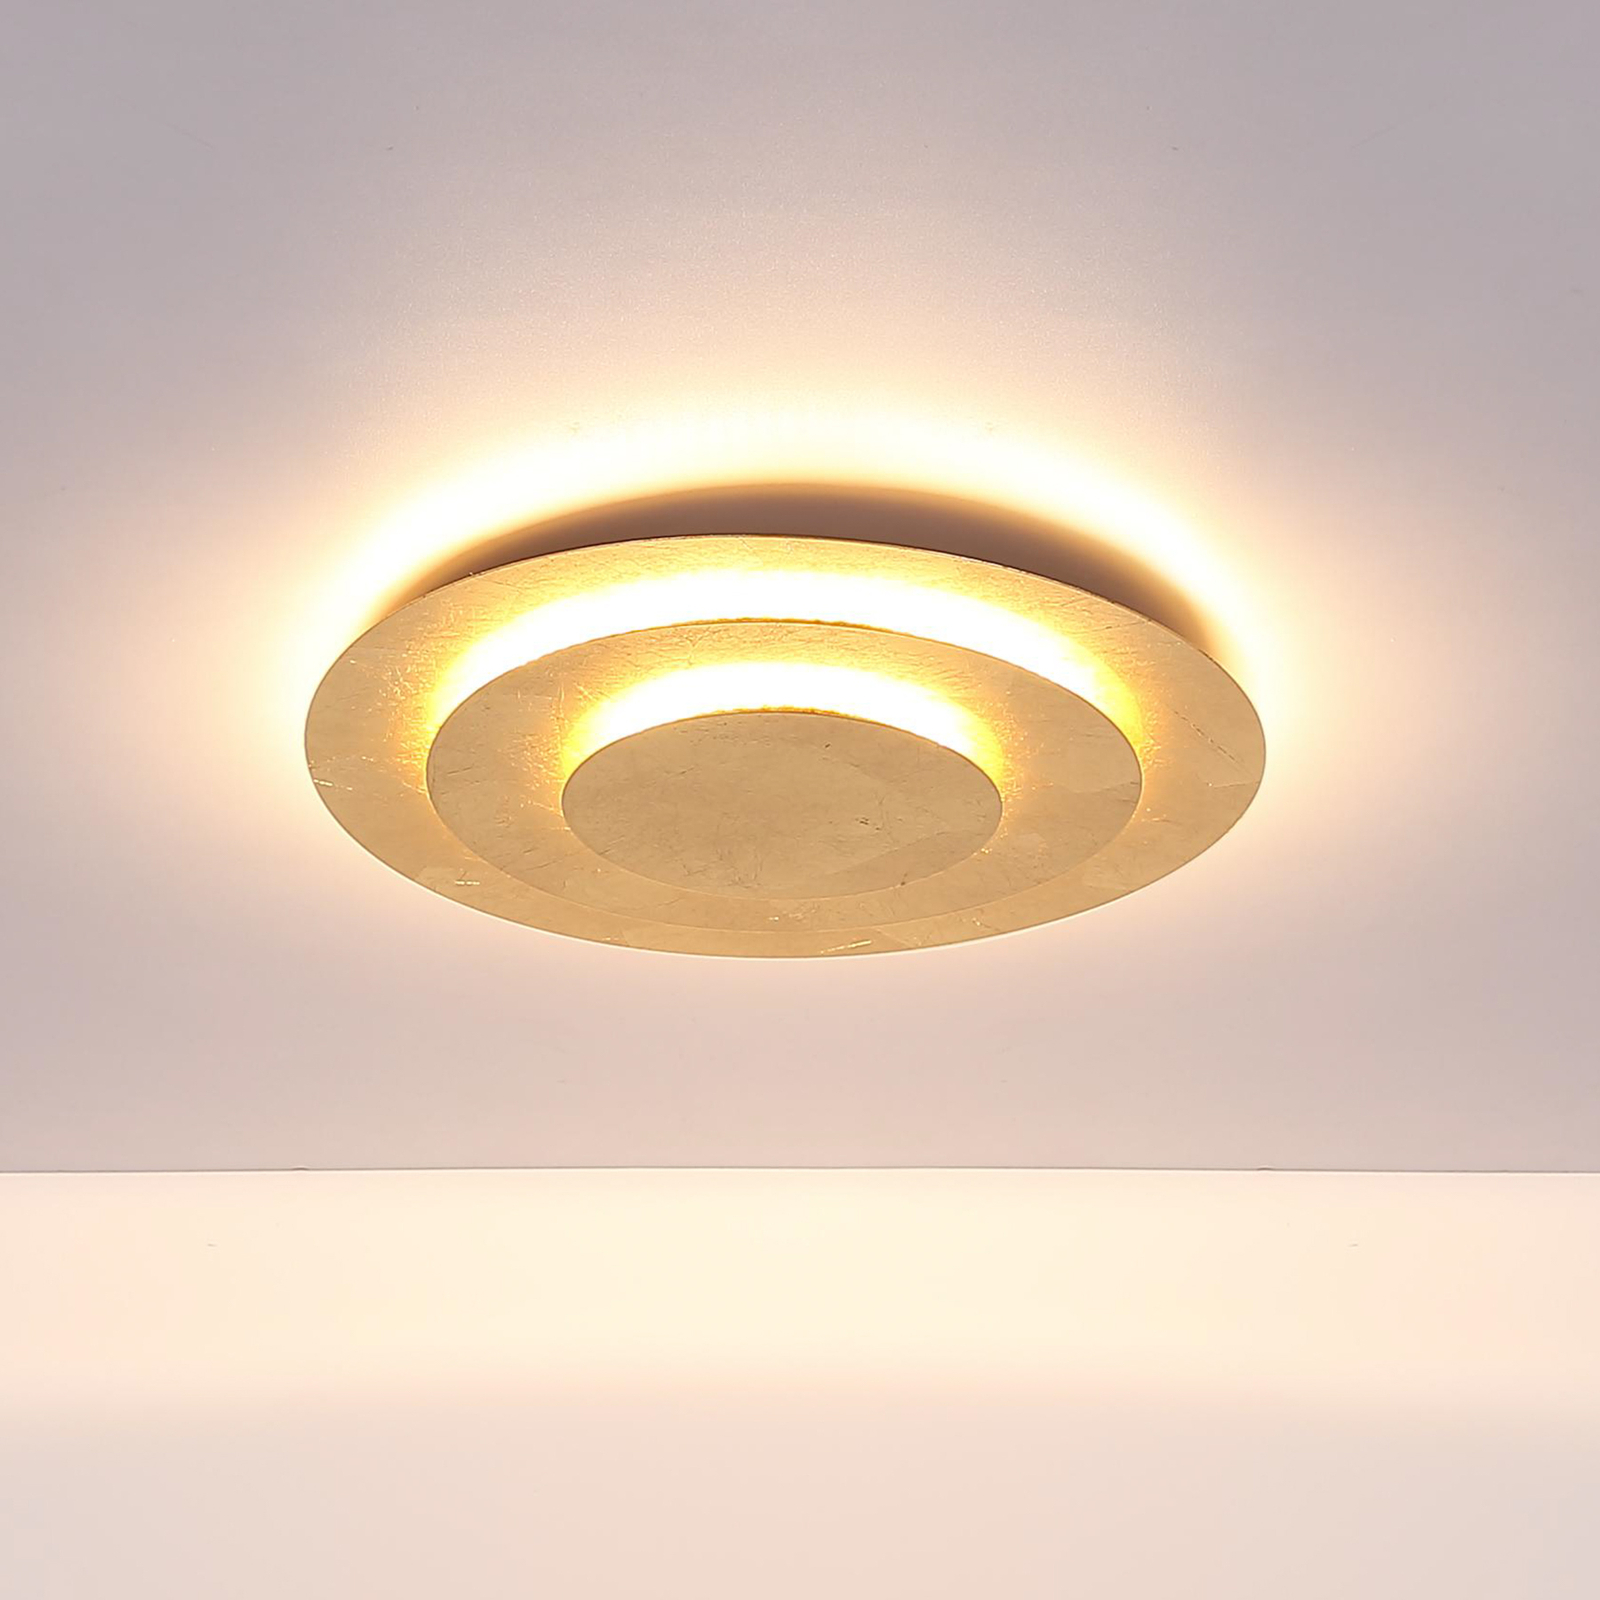 Heda LED ceiling light, Ø 49 cm, gold-coloured, metal